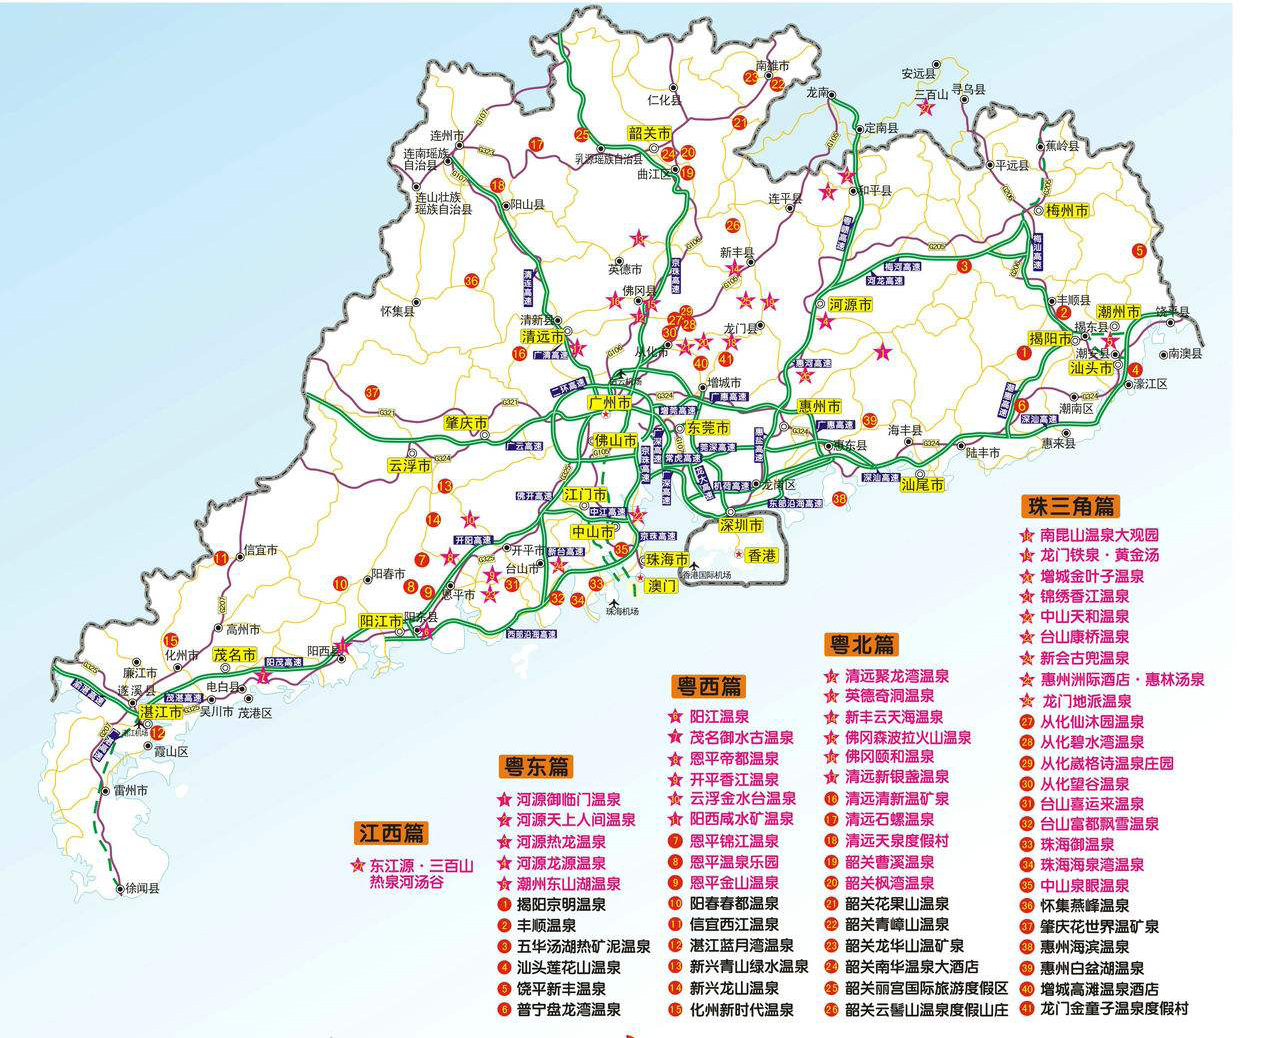 下面通过一张地图了解一下广东温泉酒店的分布情况!